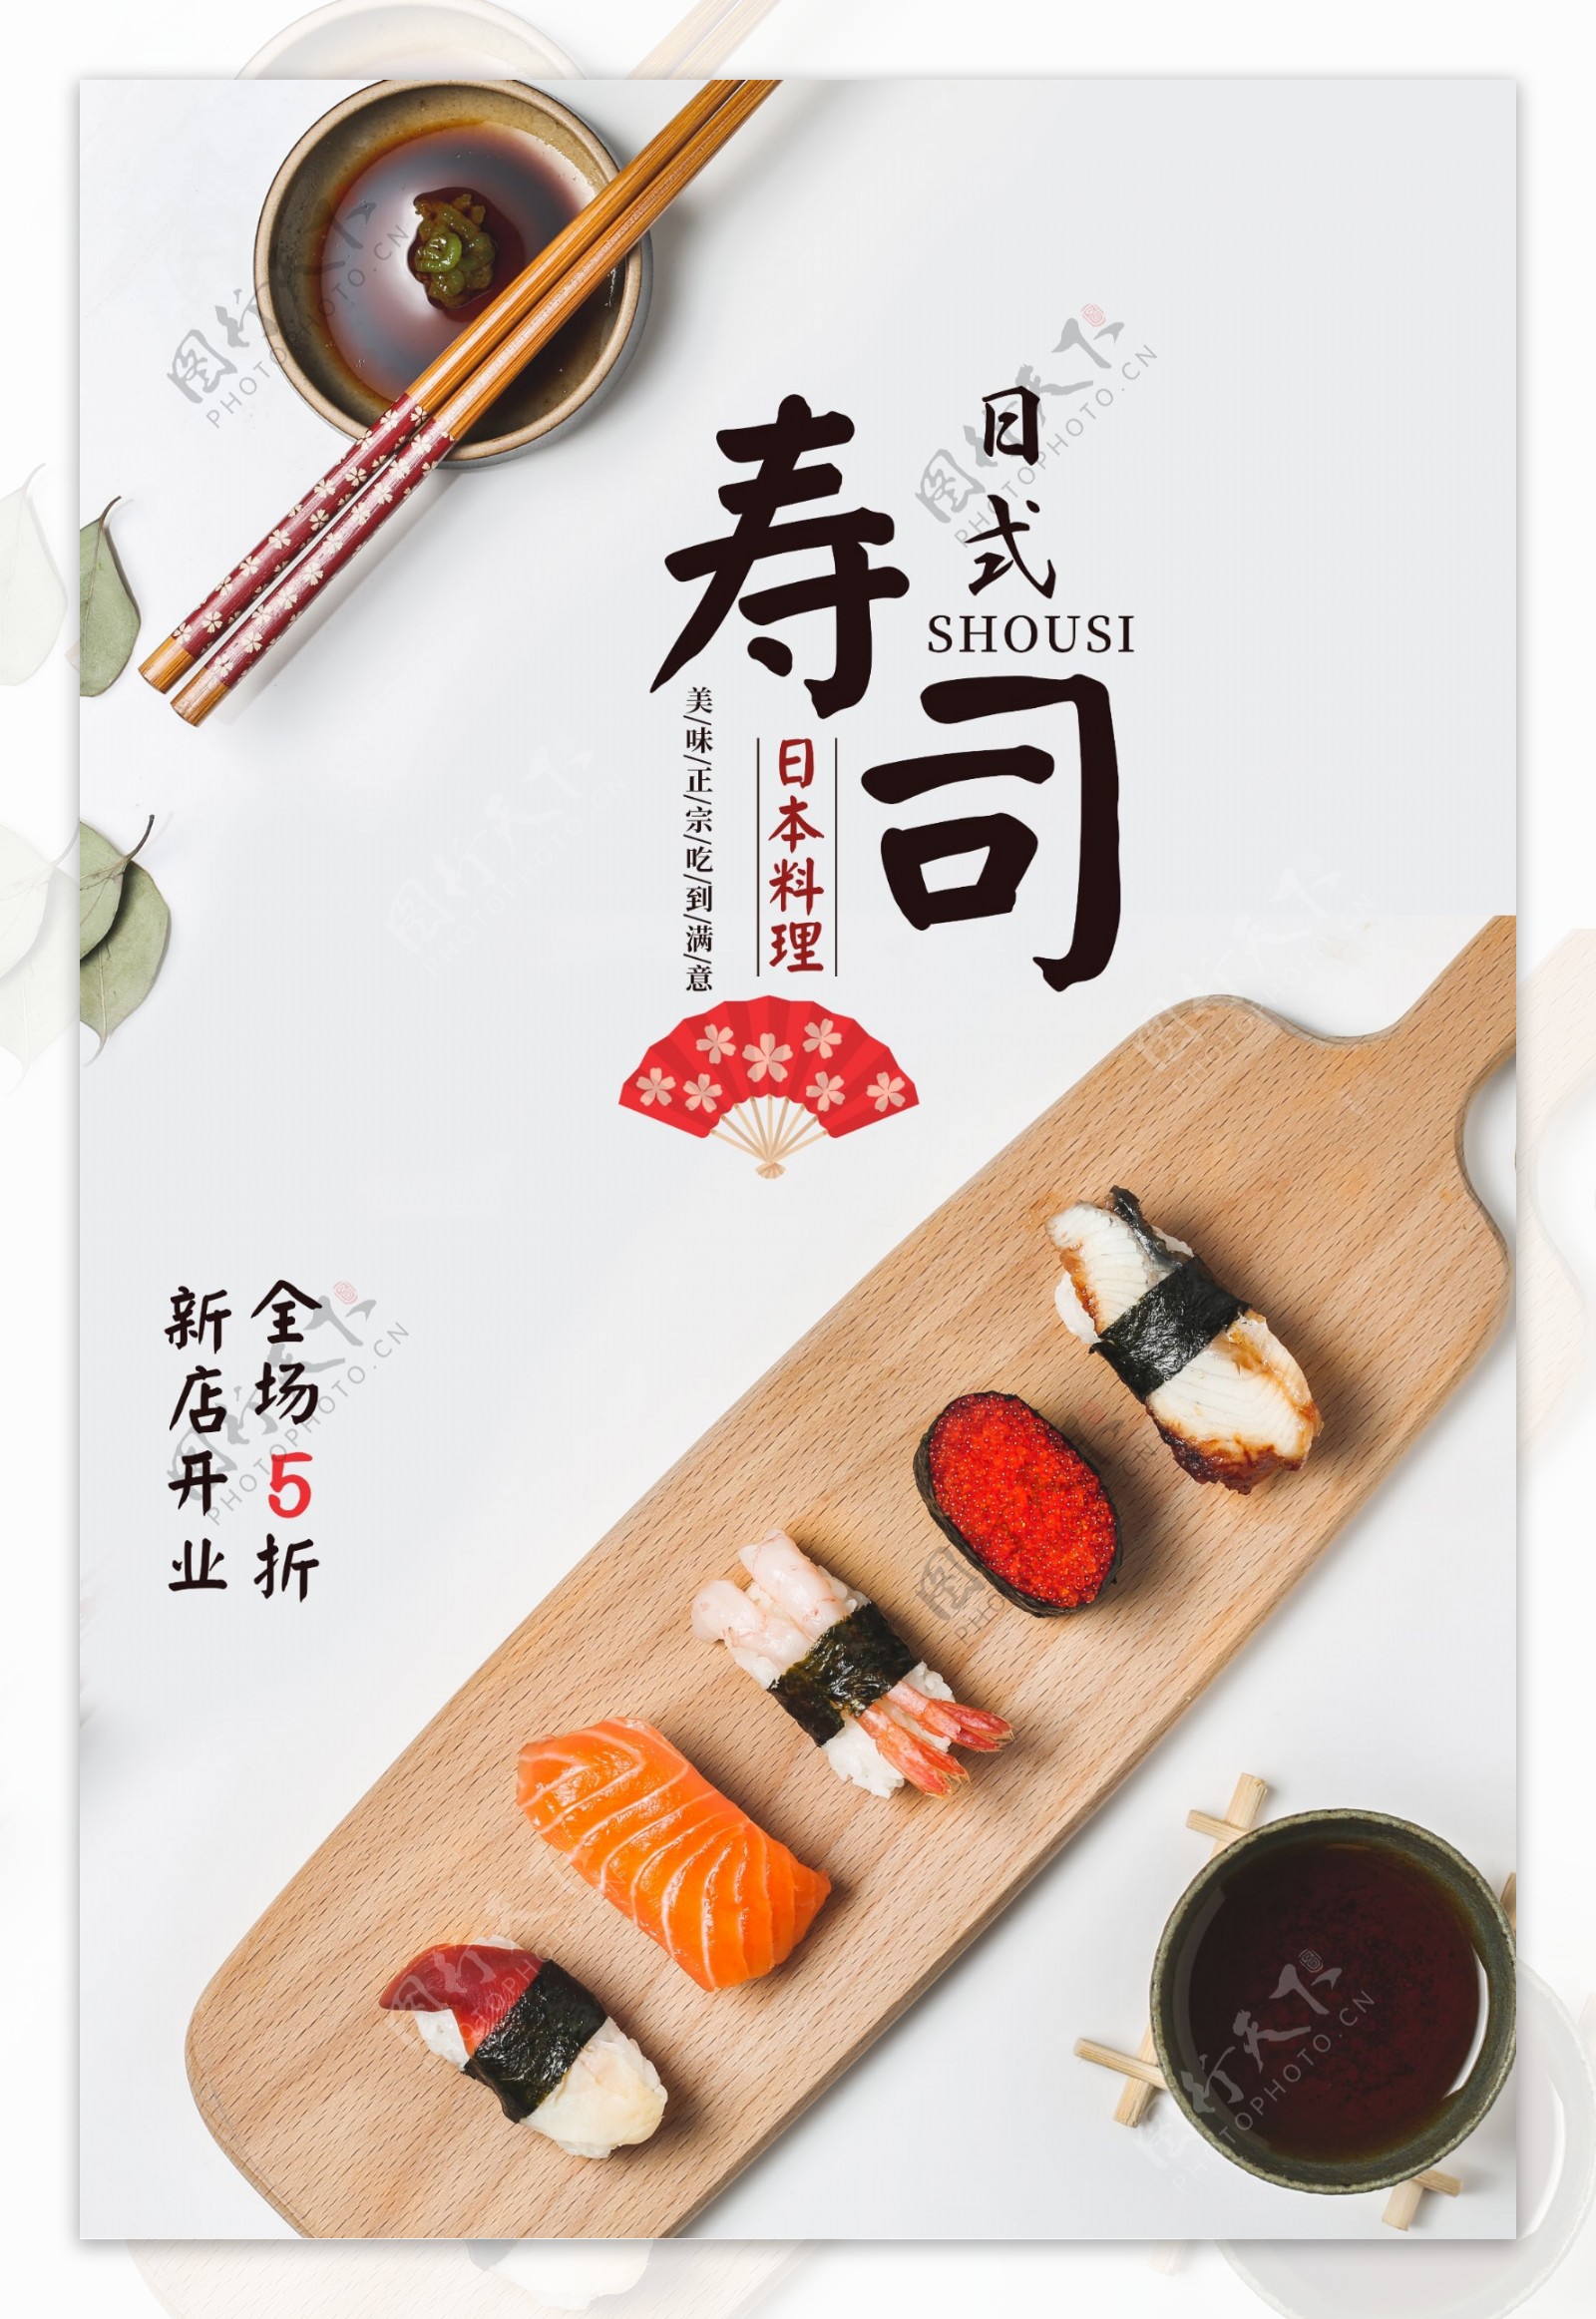 日式寿司美食活动宣传海报素材